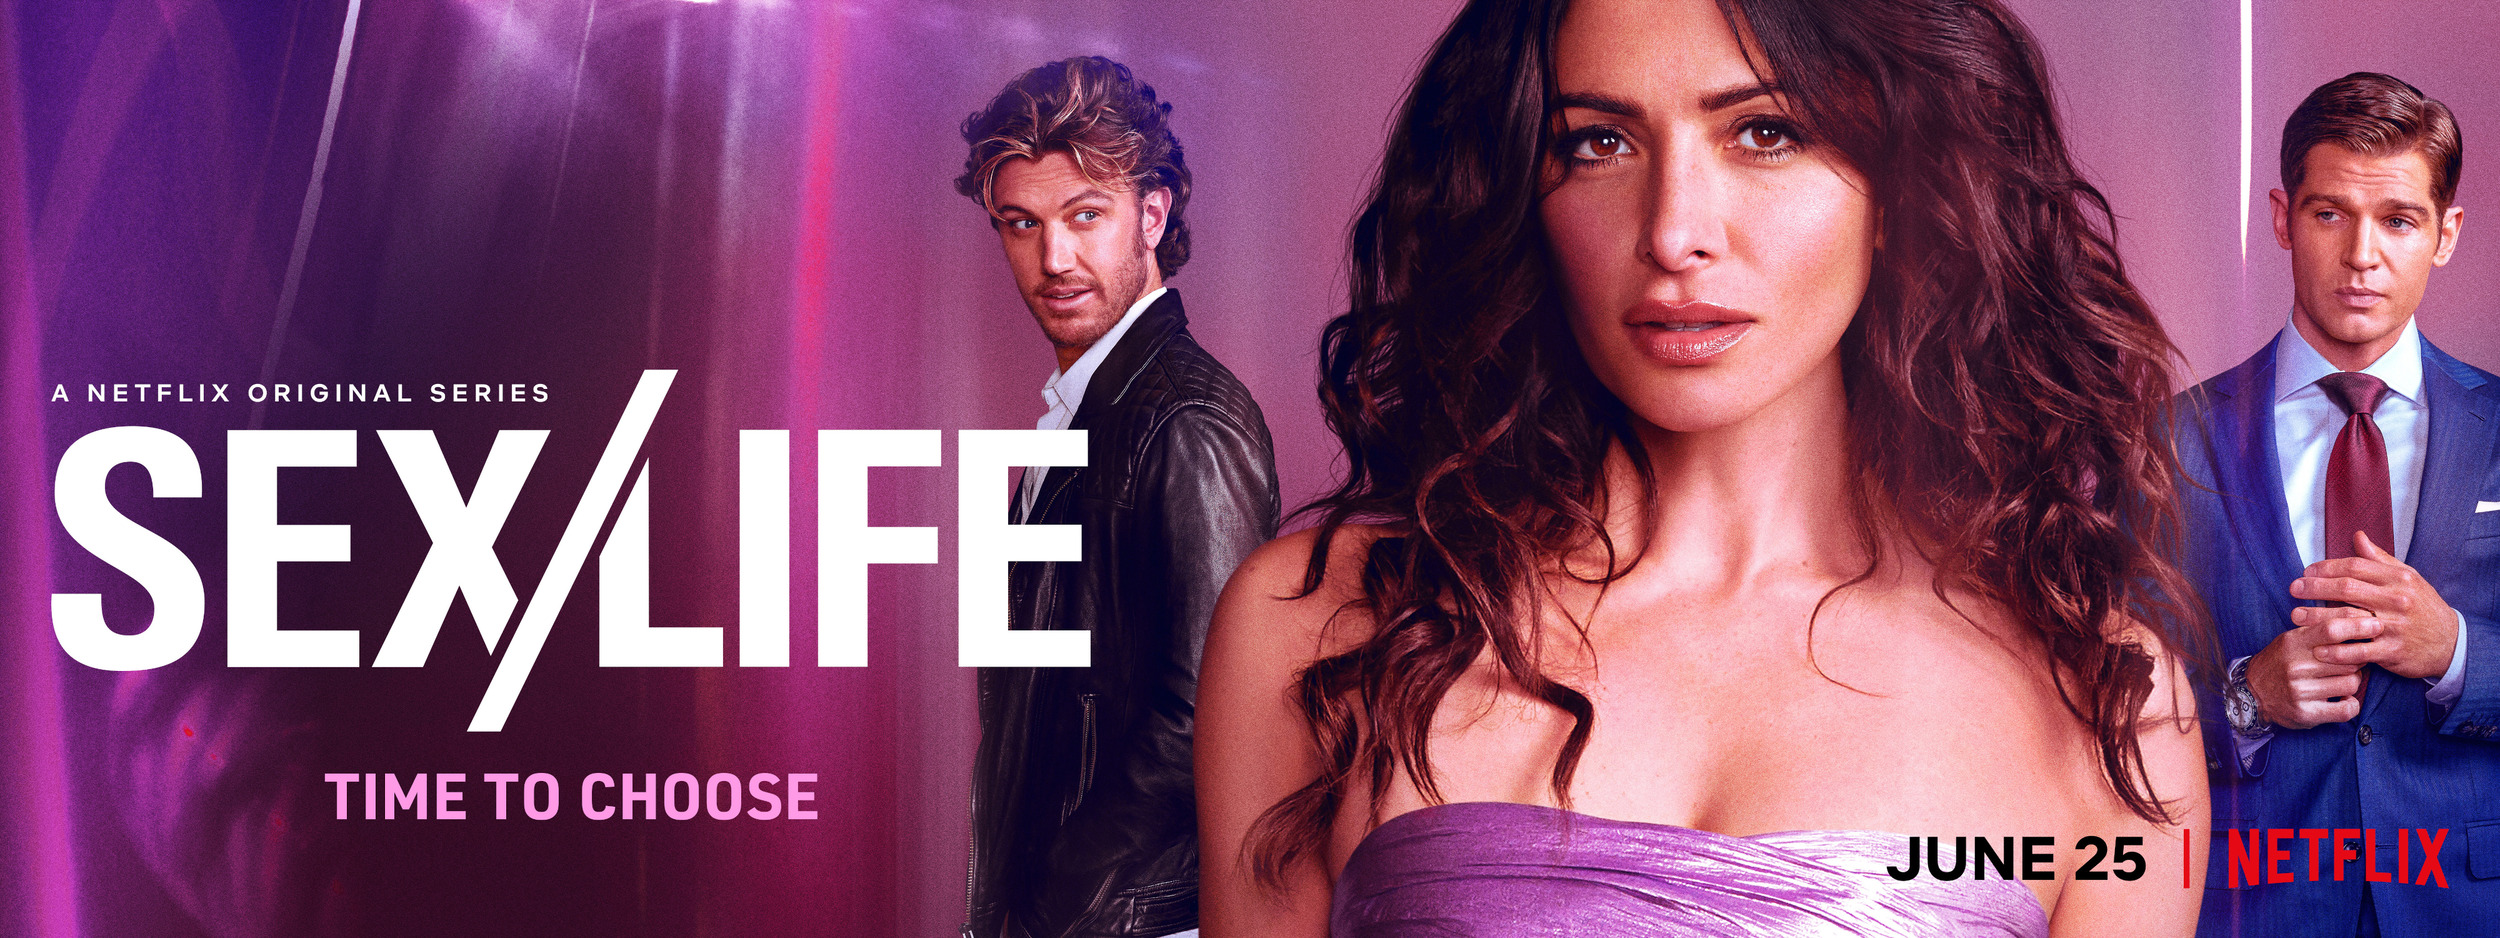 Sexlife 3 Of 3 Mega Sized Movie Poster Image Imp Awards